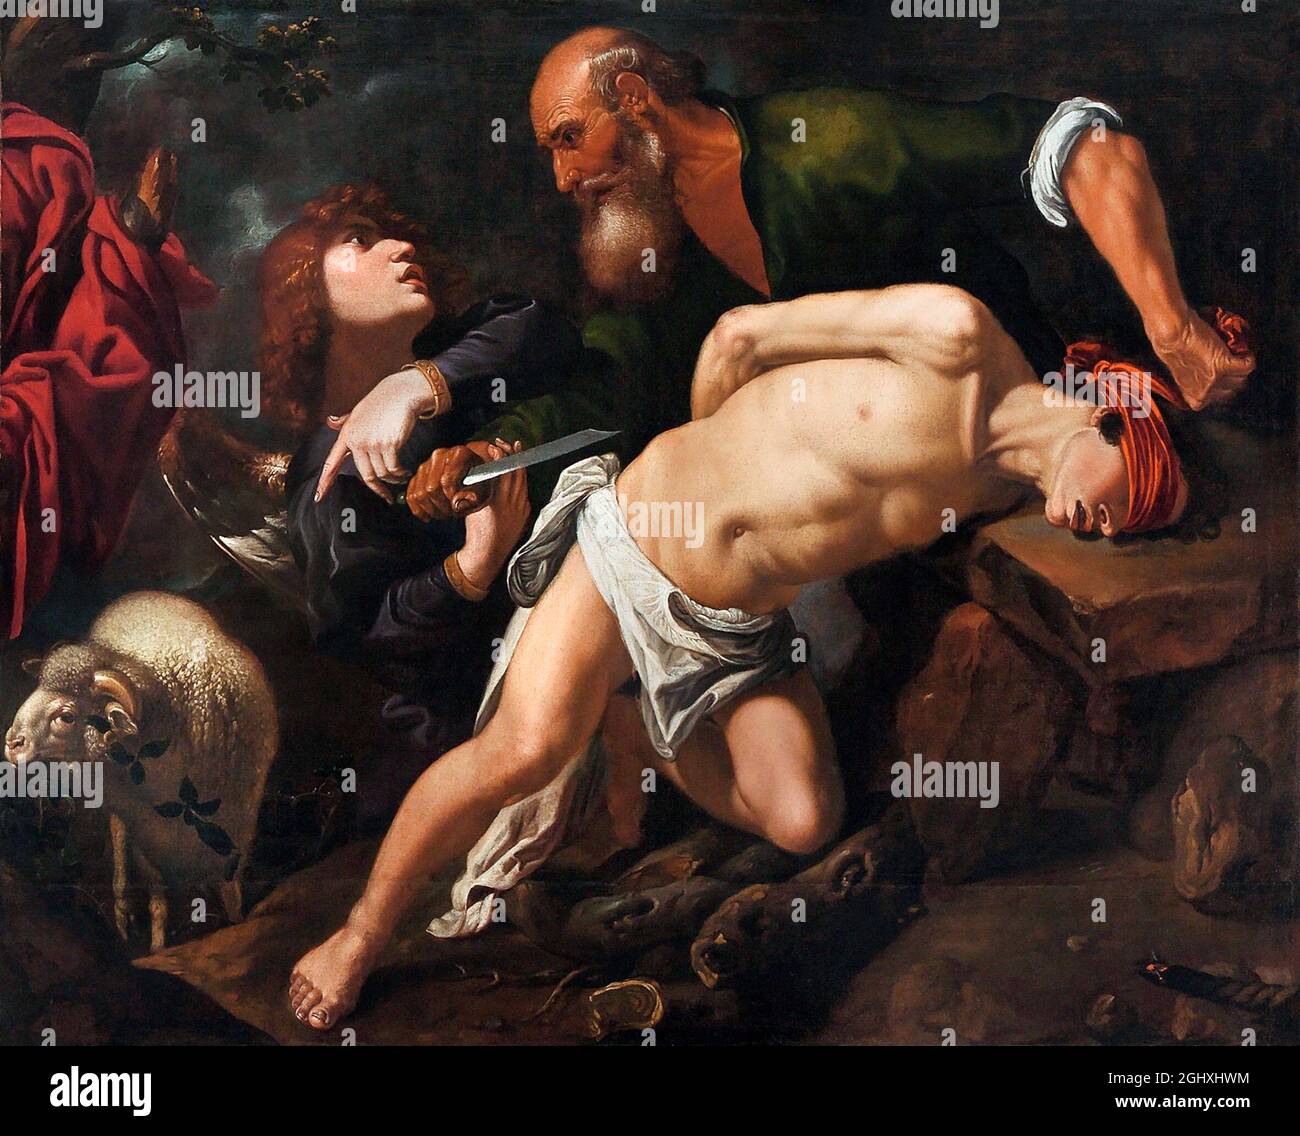 Le sacrifice d'Isaac par l'artiste baroque espagnol Pedro de Orrente (1580-1645), huile sur toile, c.1616 Banque D'Images